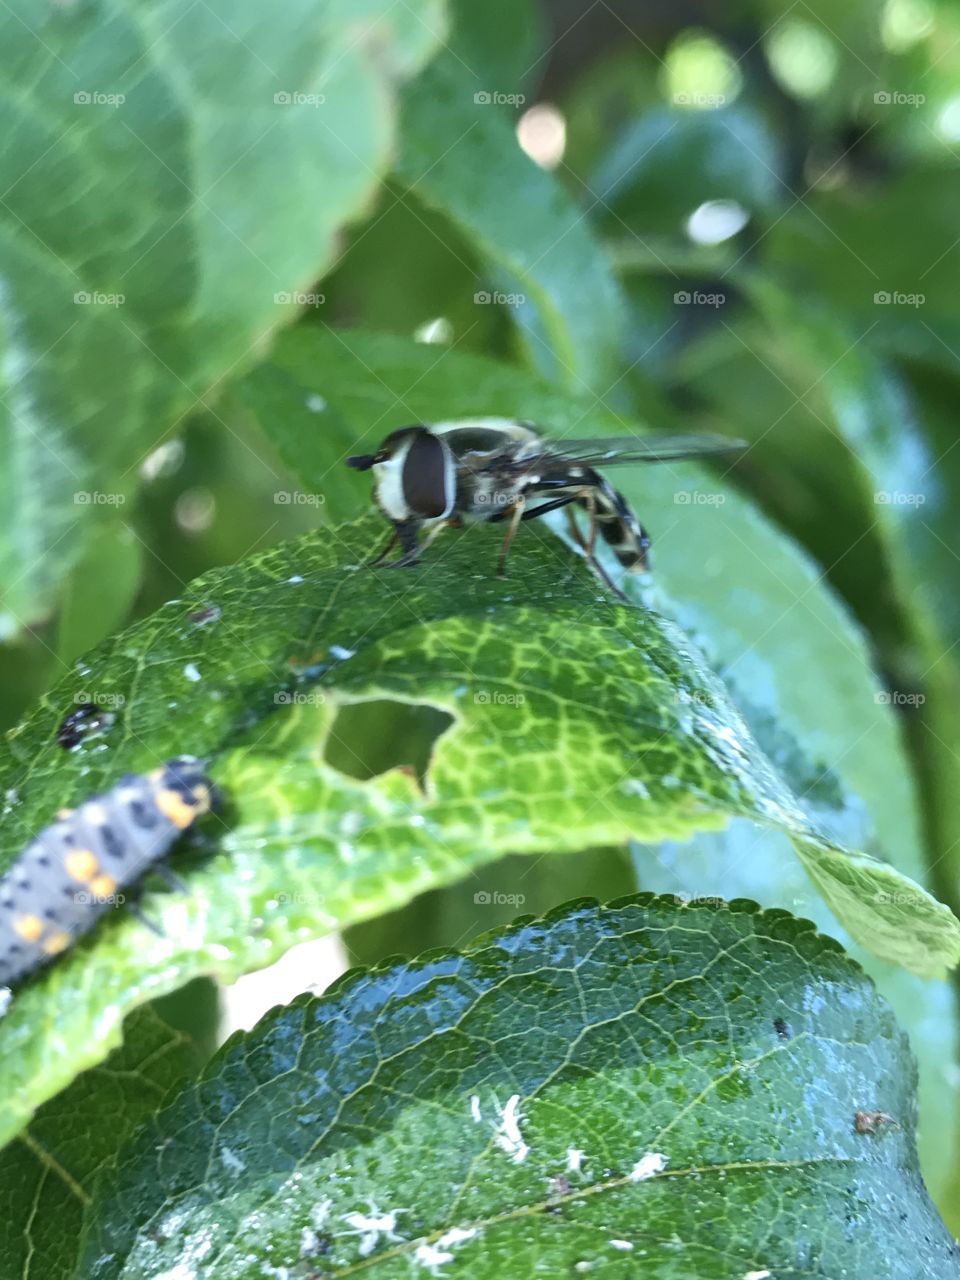 Bug fly 